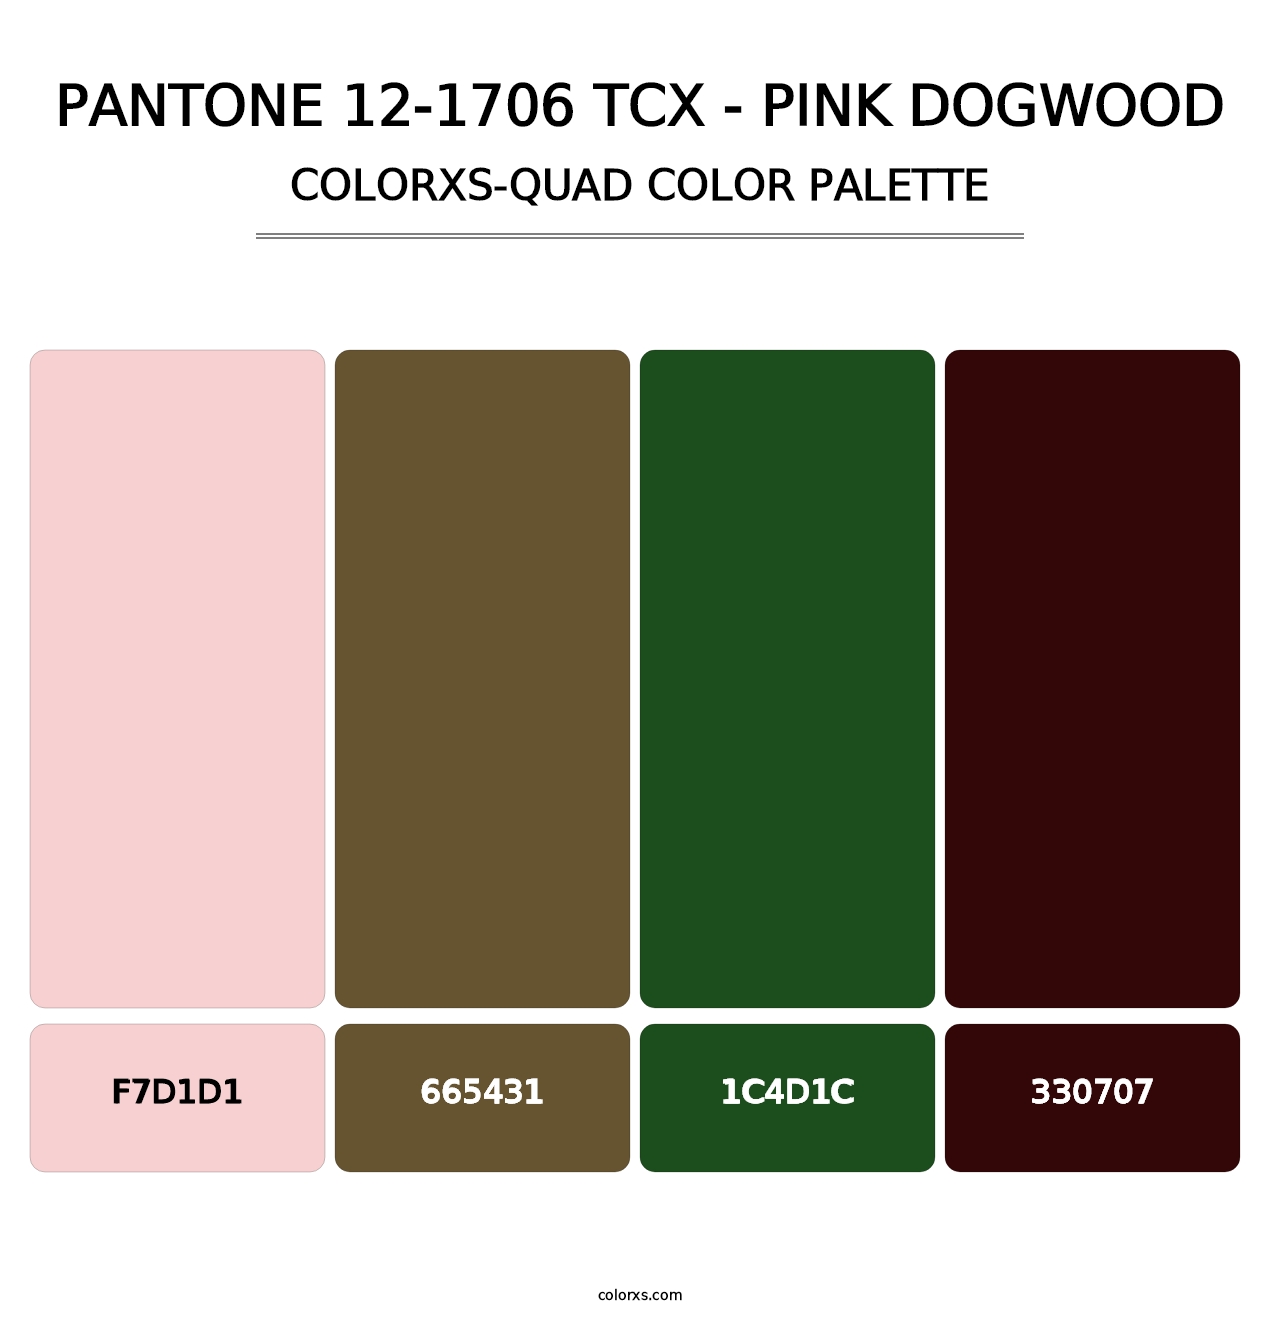 PANTONE 12-1706 TCX - Pink Dogwood - Colorxs Quad Palette